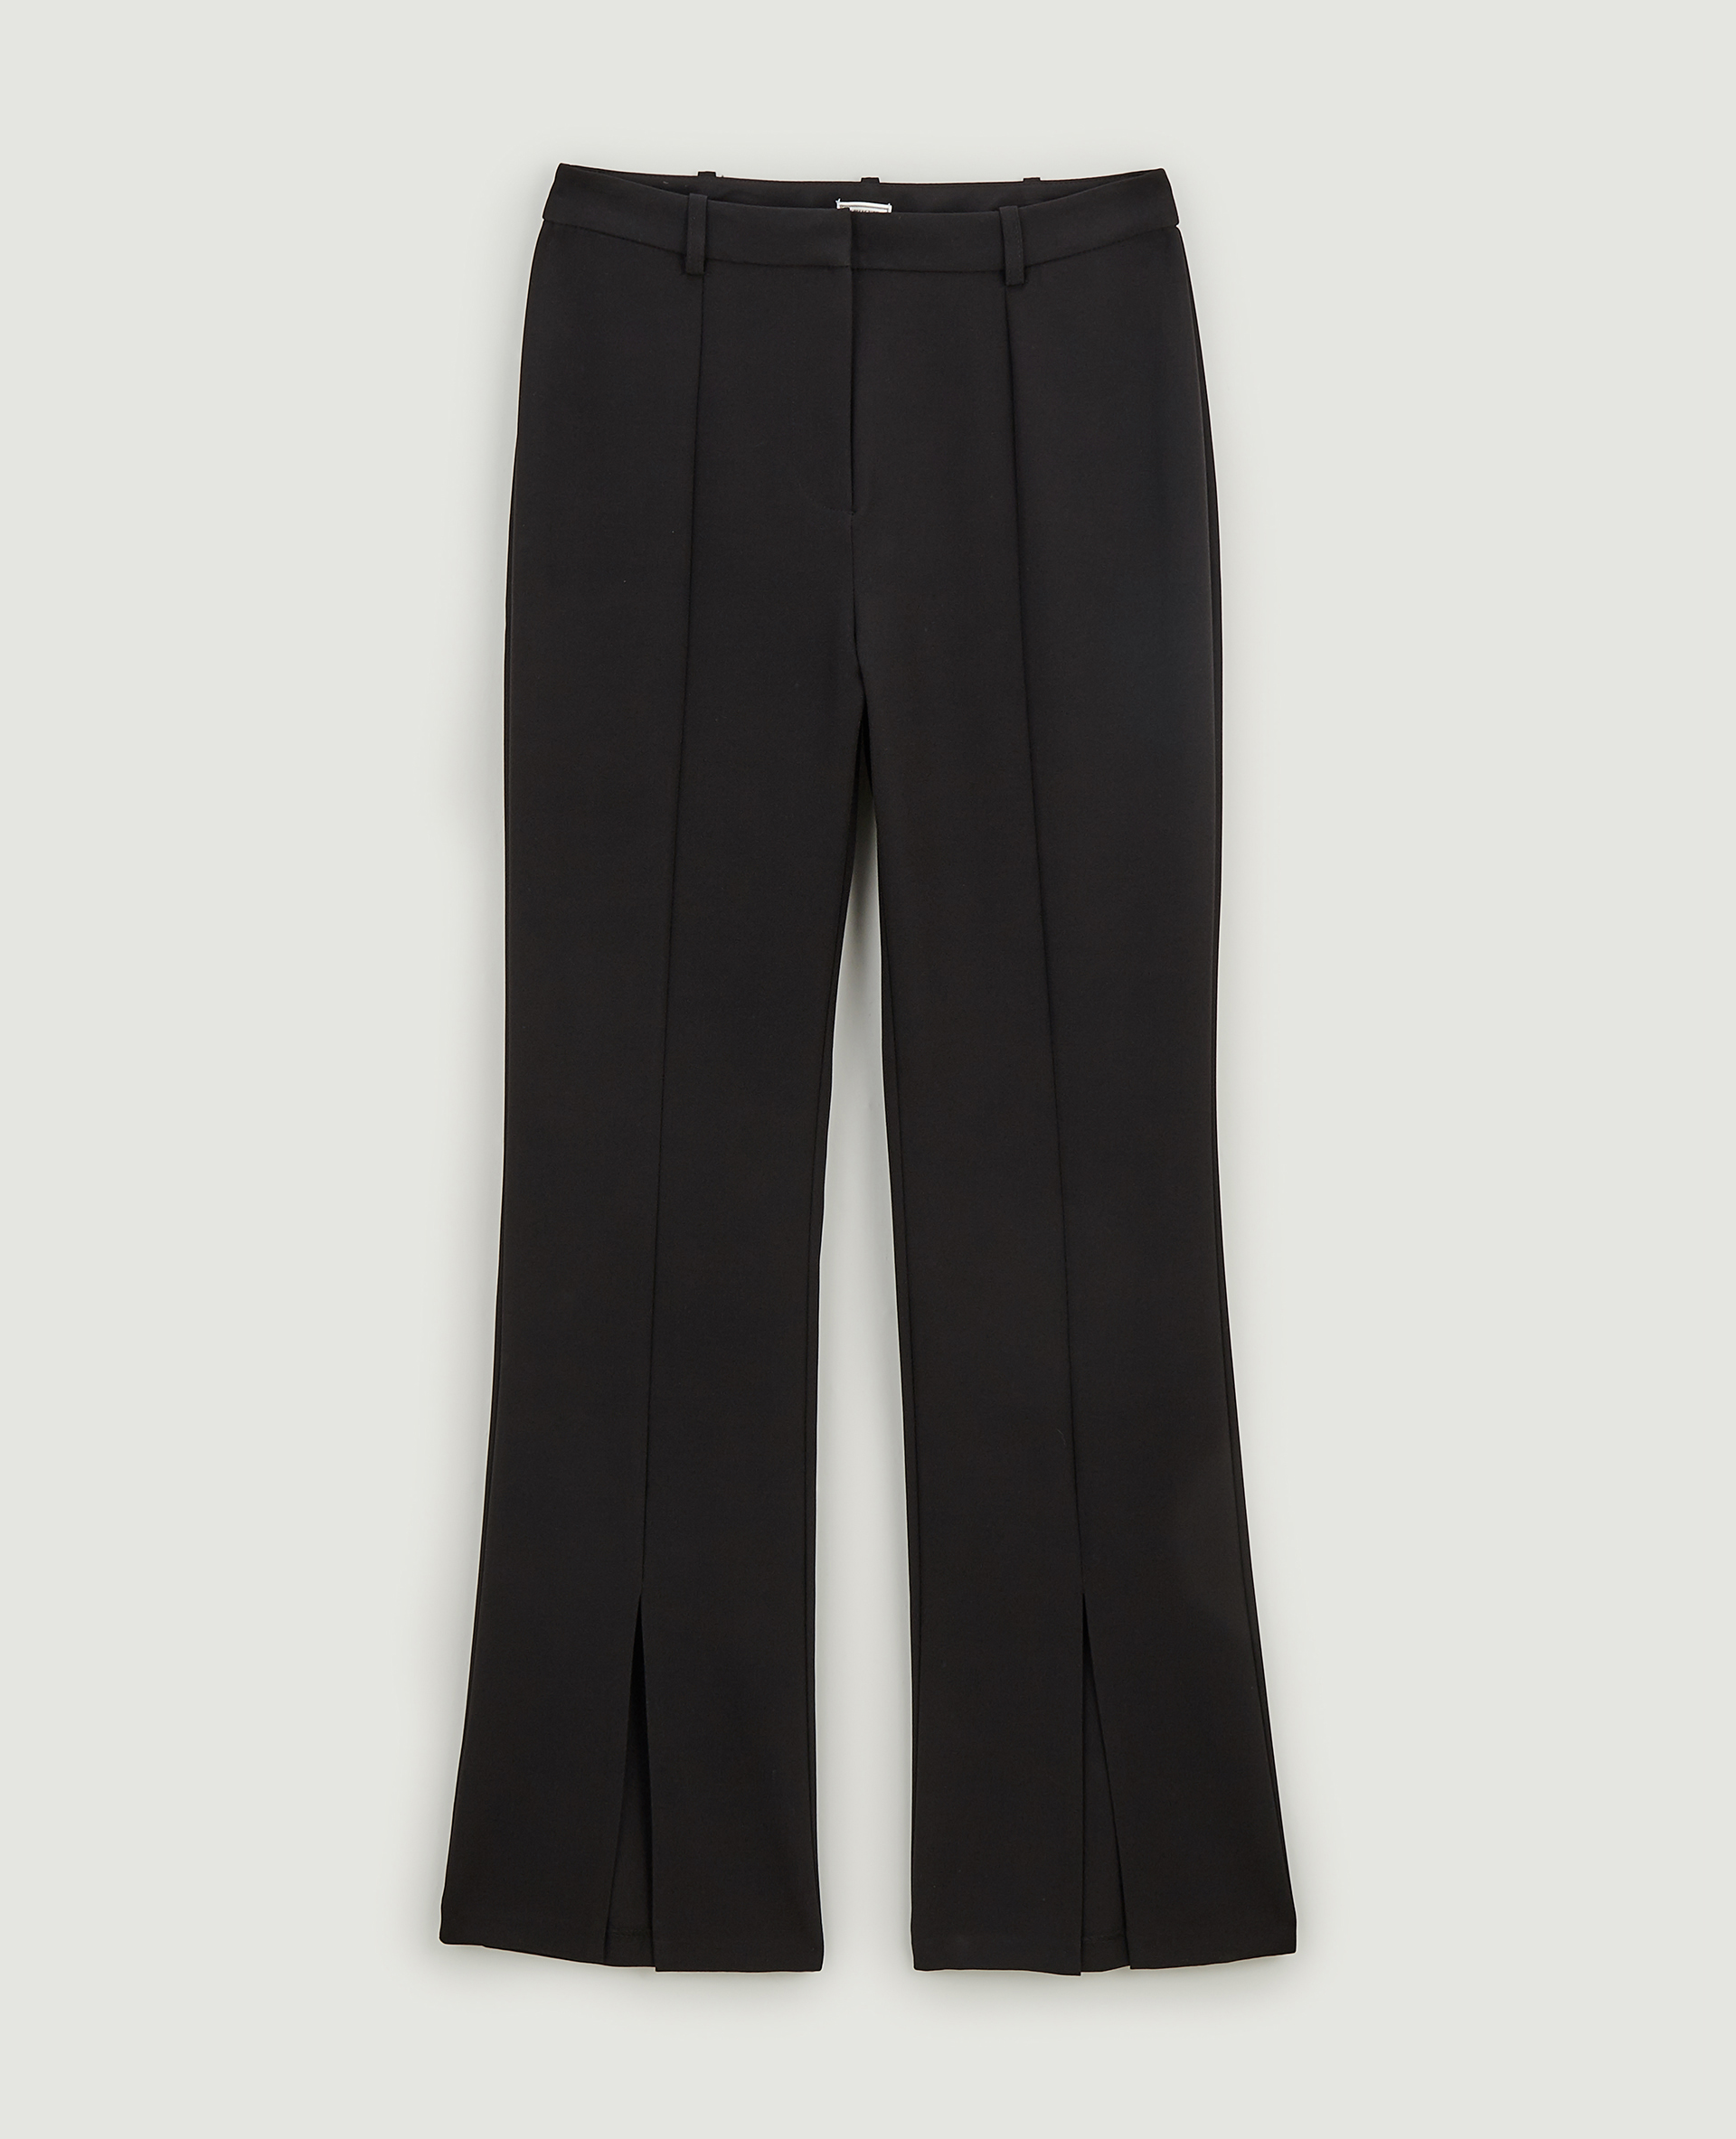 Pantalon droit avec fente noir - Pimkie